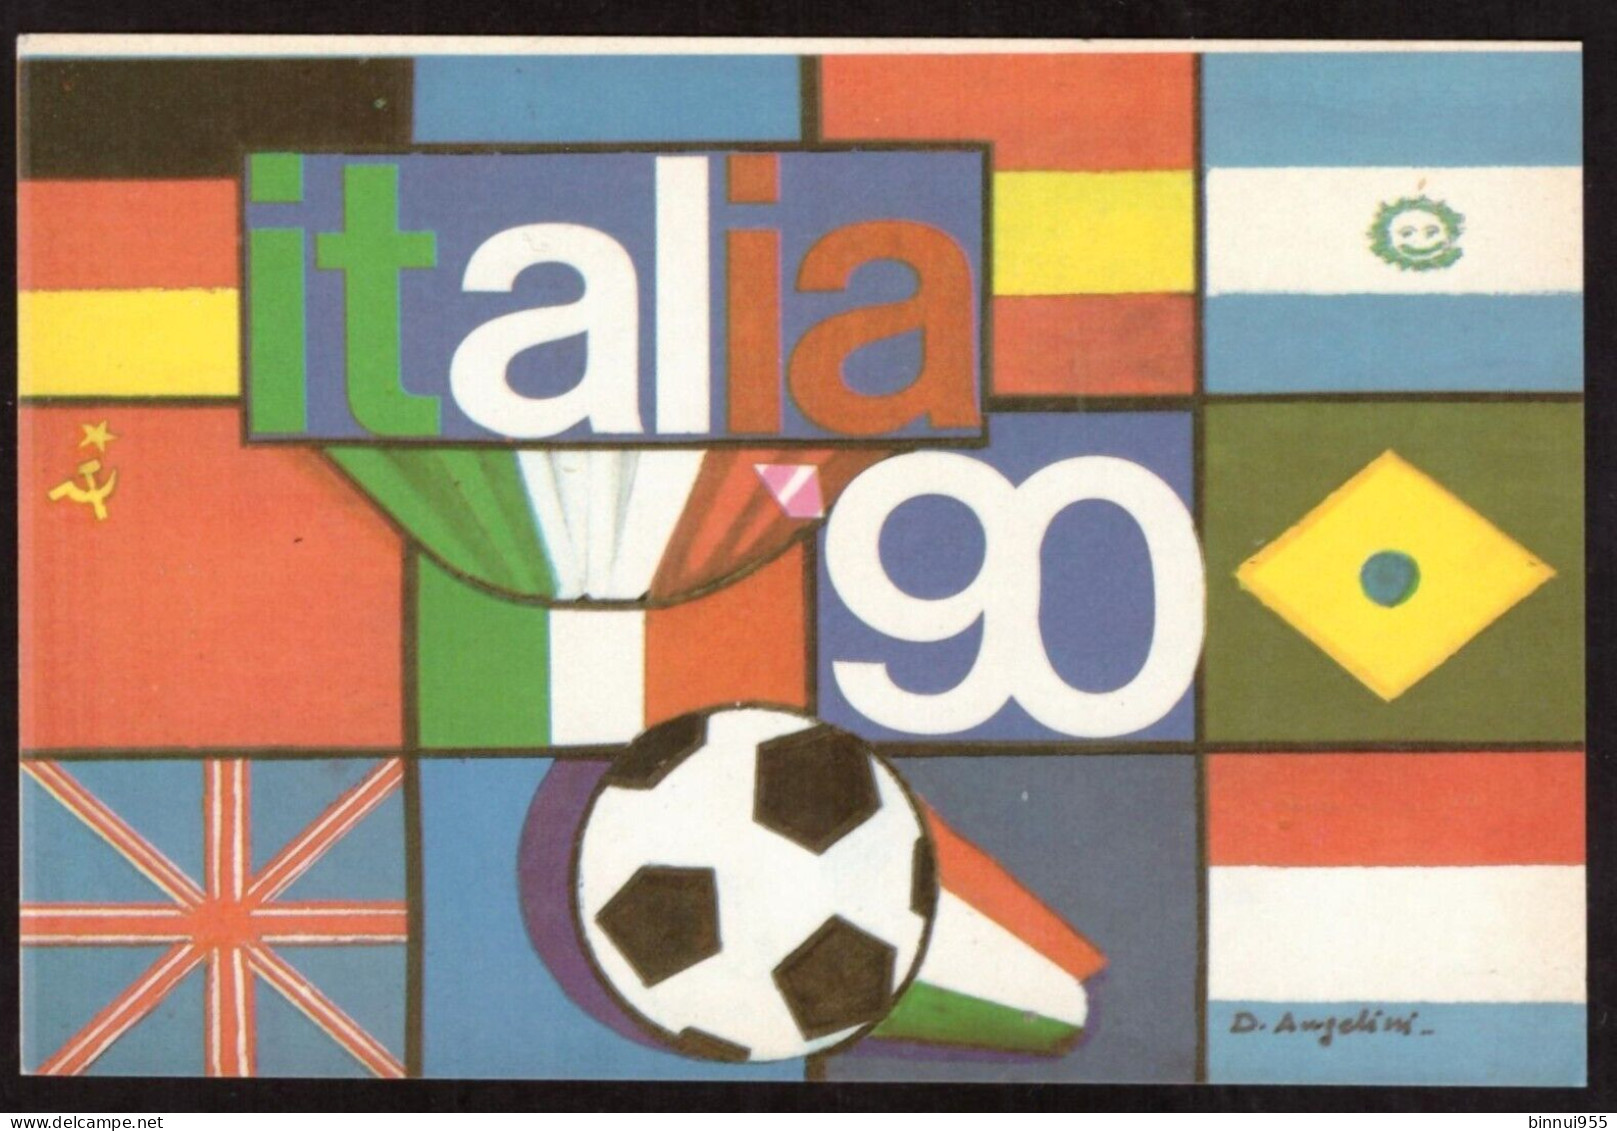 Cartolina Autoadesiva Italia 90 Campionati Di Calcio Non Viaggiata - Soccer